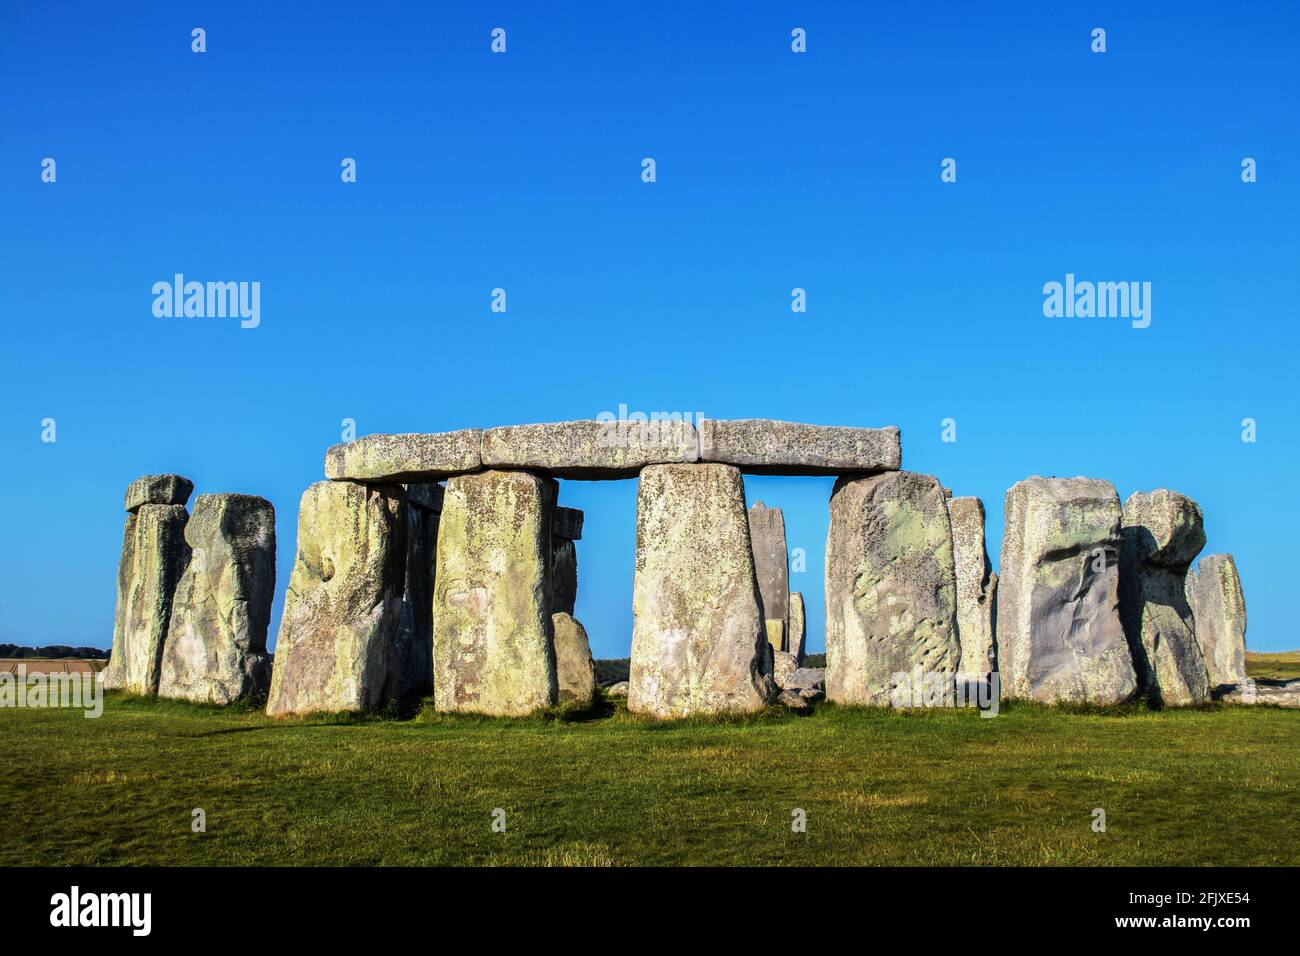 Nahaufnahme von Stonehenge stehenden Steinen mit drei Türmen über vier Riesige Ständer im Vordergrund unter einem sehr blauen Himmel An einem Sommertag mit einer Kasse Stockfoto